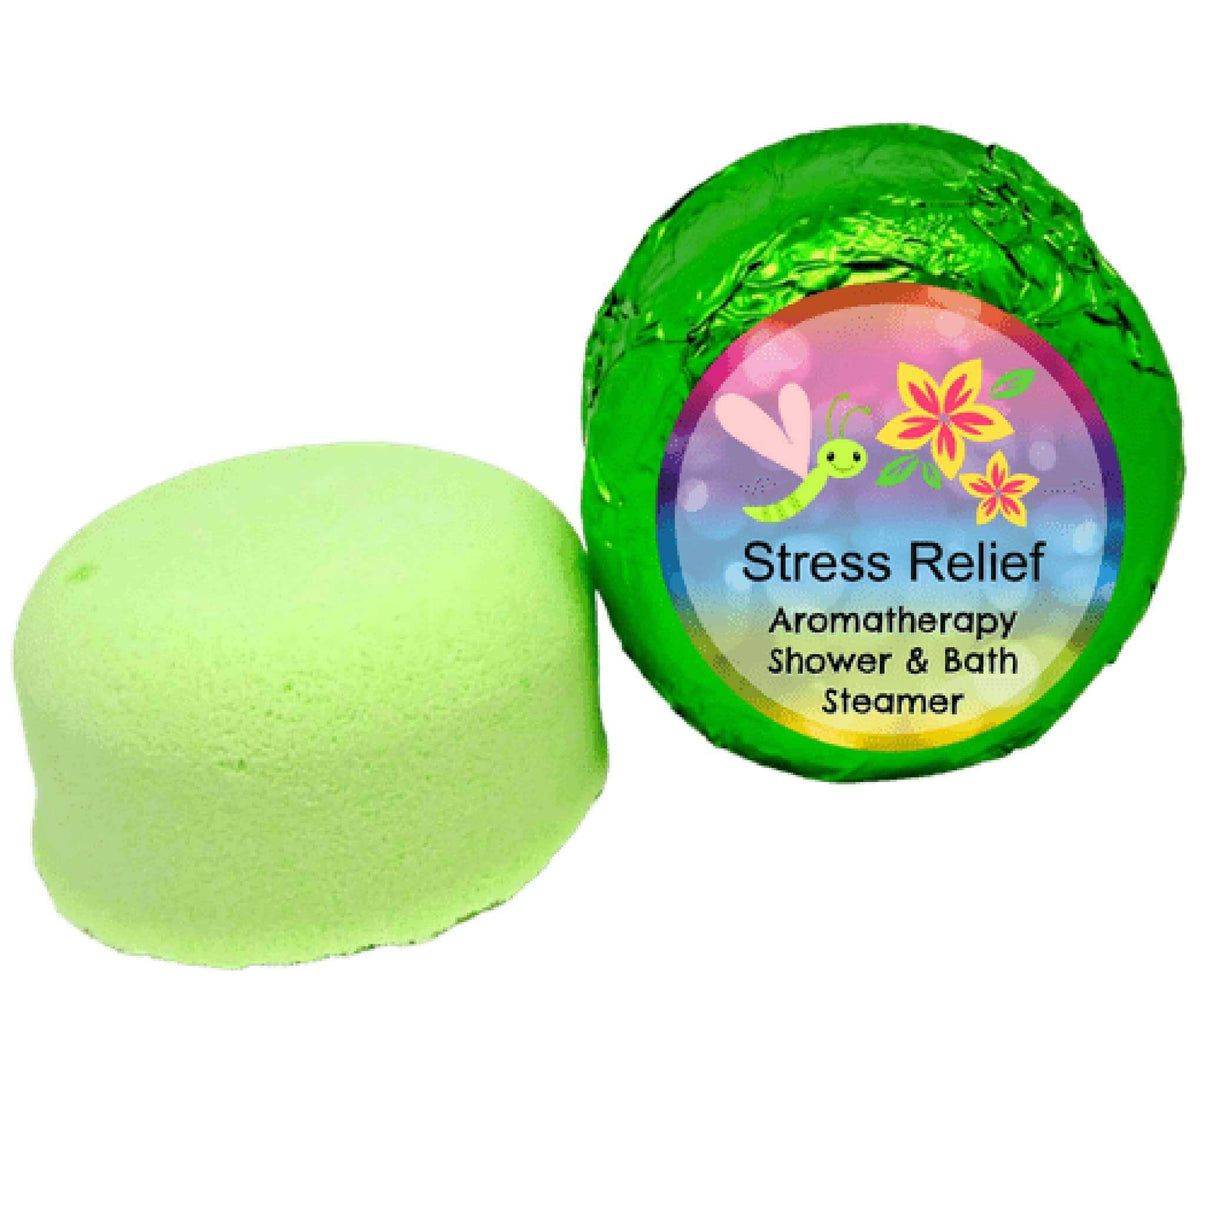 Stress relief shower steamer